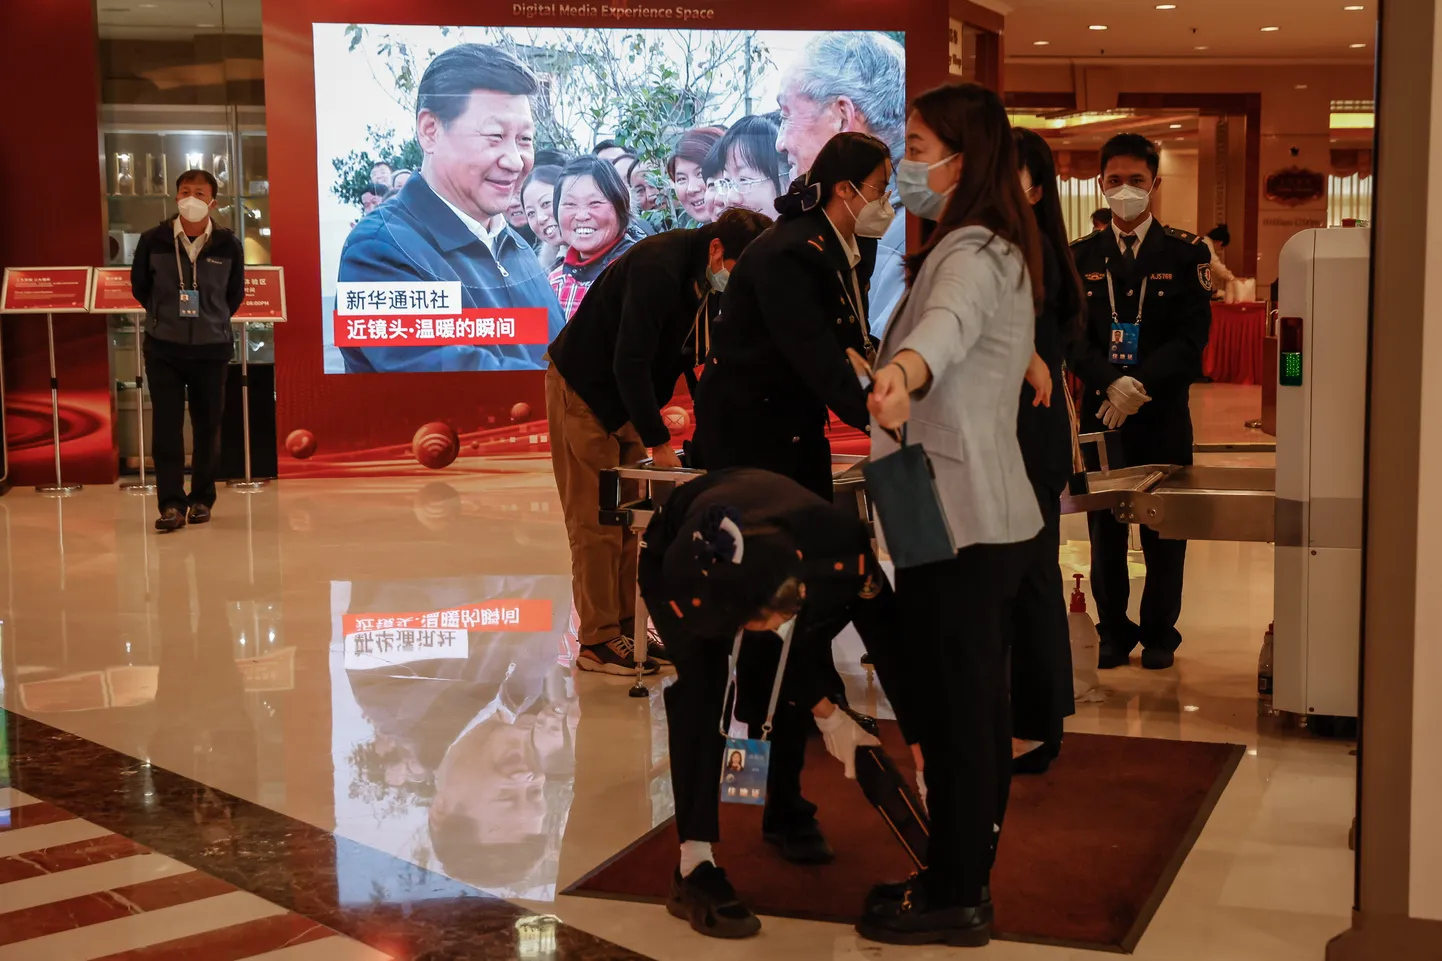 Hiina president Xi Jinping valitakse parteikongressil suurriiki tüürima ka seninägematuks kolmandaks ametiajaks. Pealinnas käivad suured ettevalmistused pidulikuks juubelikongressi tähistamiseks. Fotol turvakontroll Pekingi Nikko hotellis.